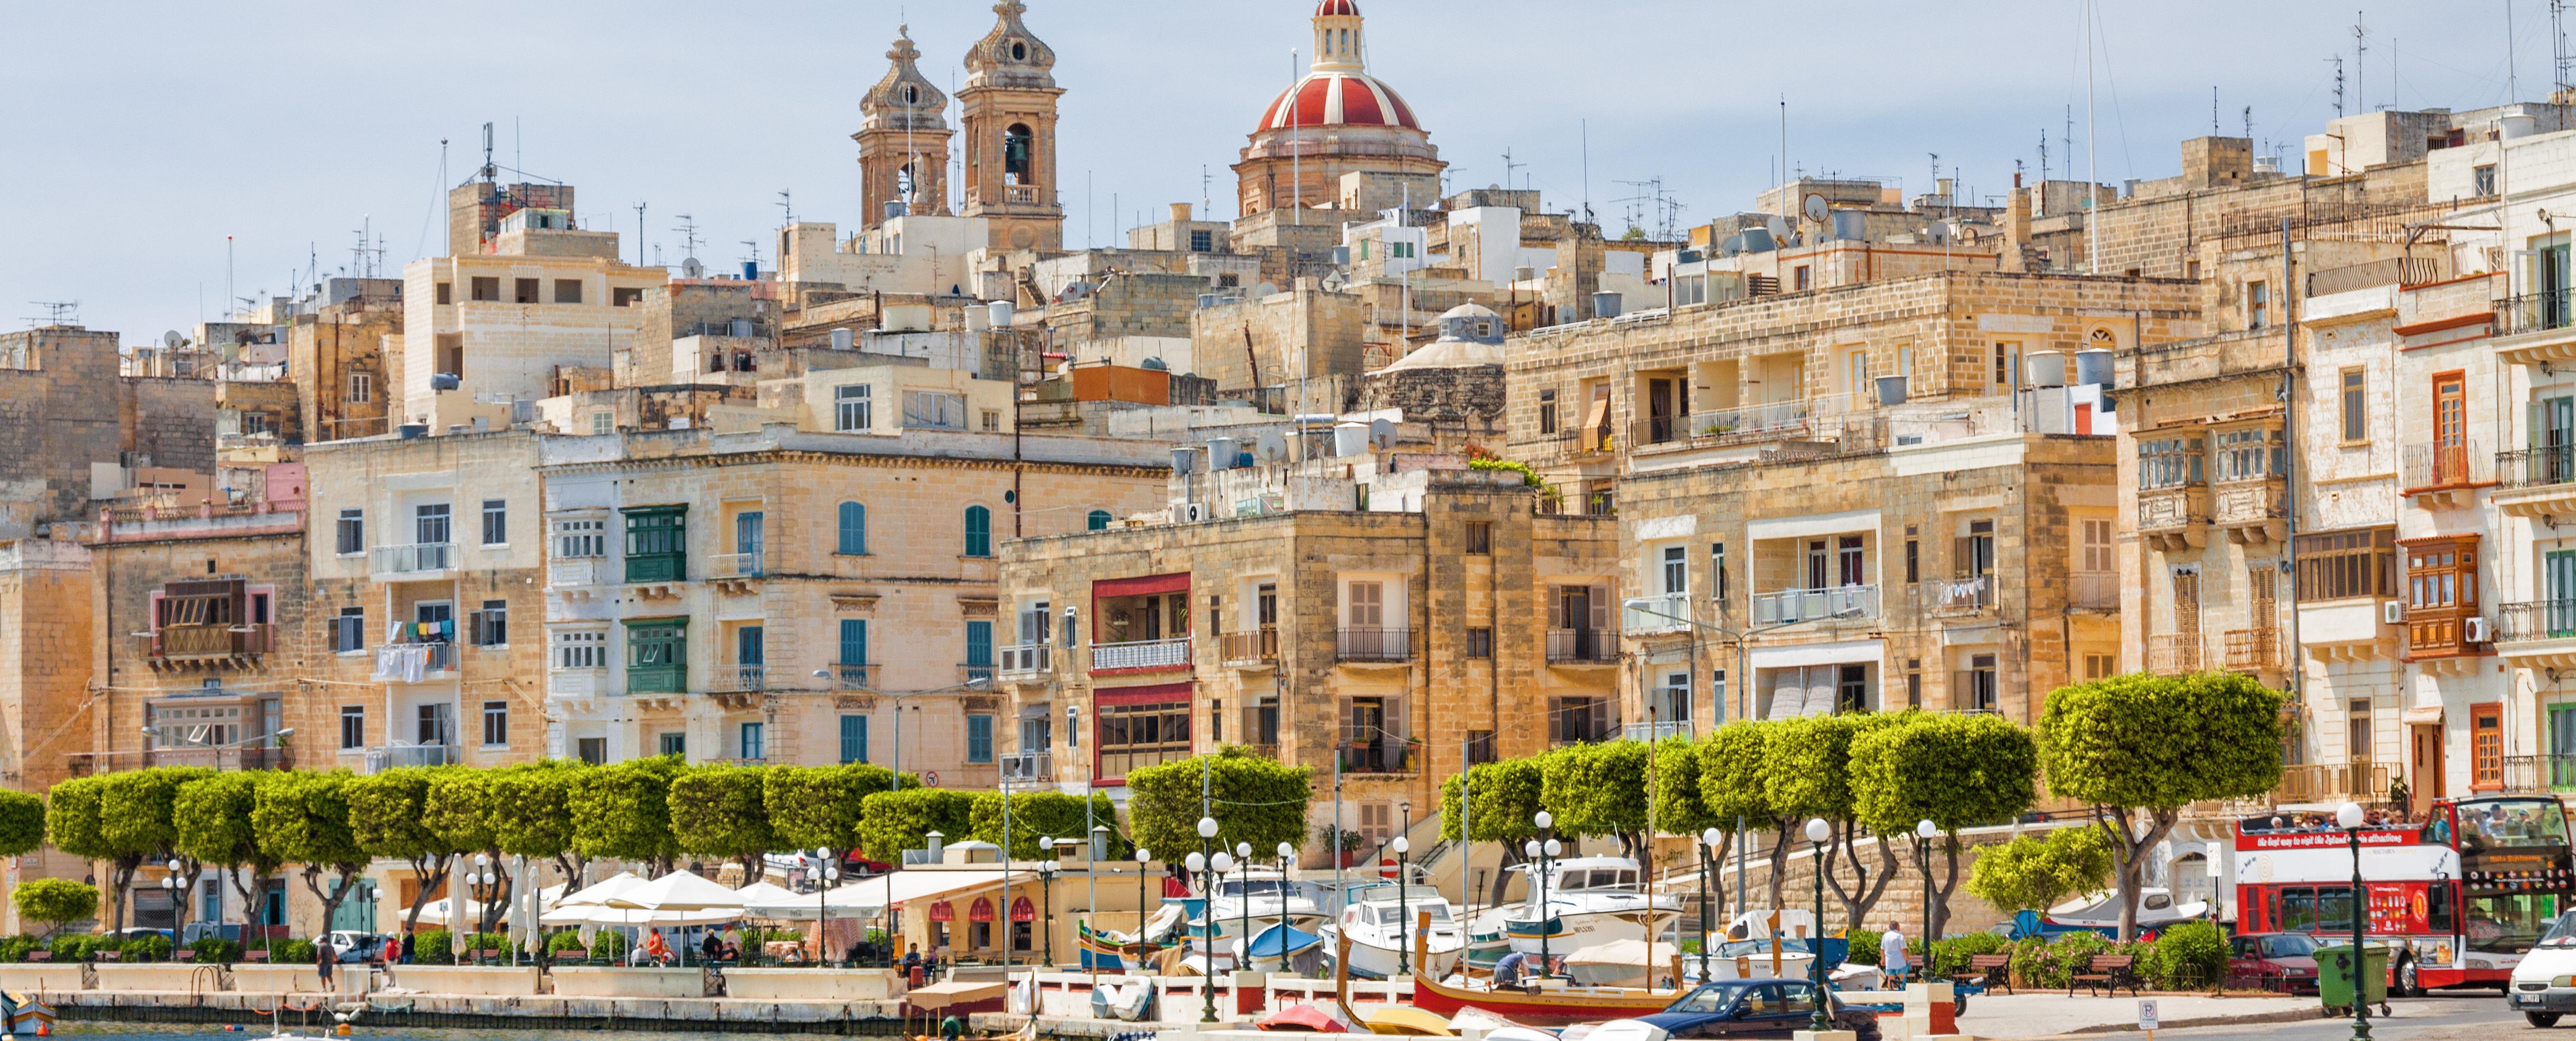 Crociera nei 2 porti di Malta - partenza/ritorno hotel